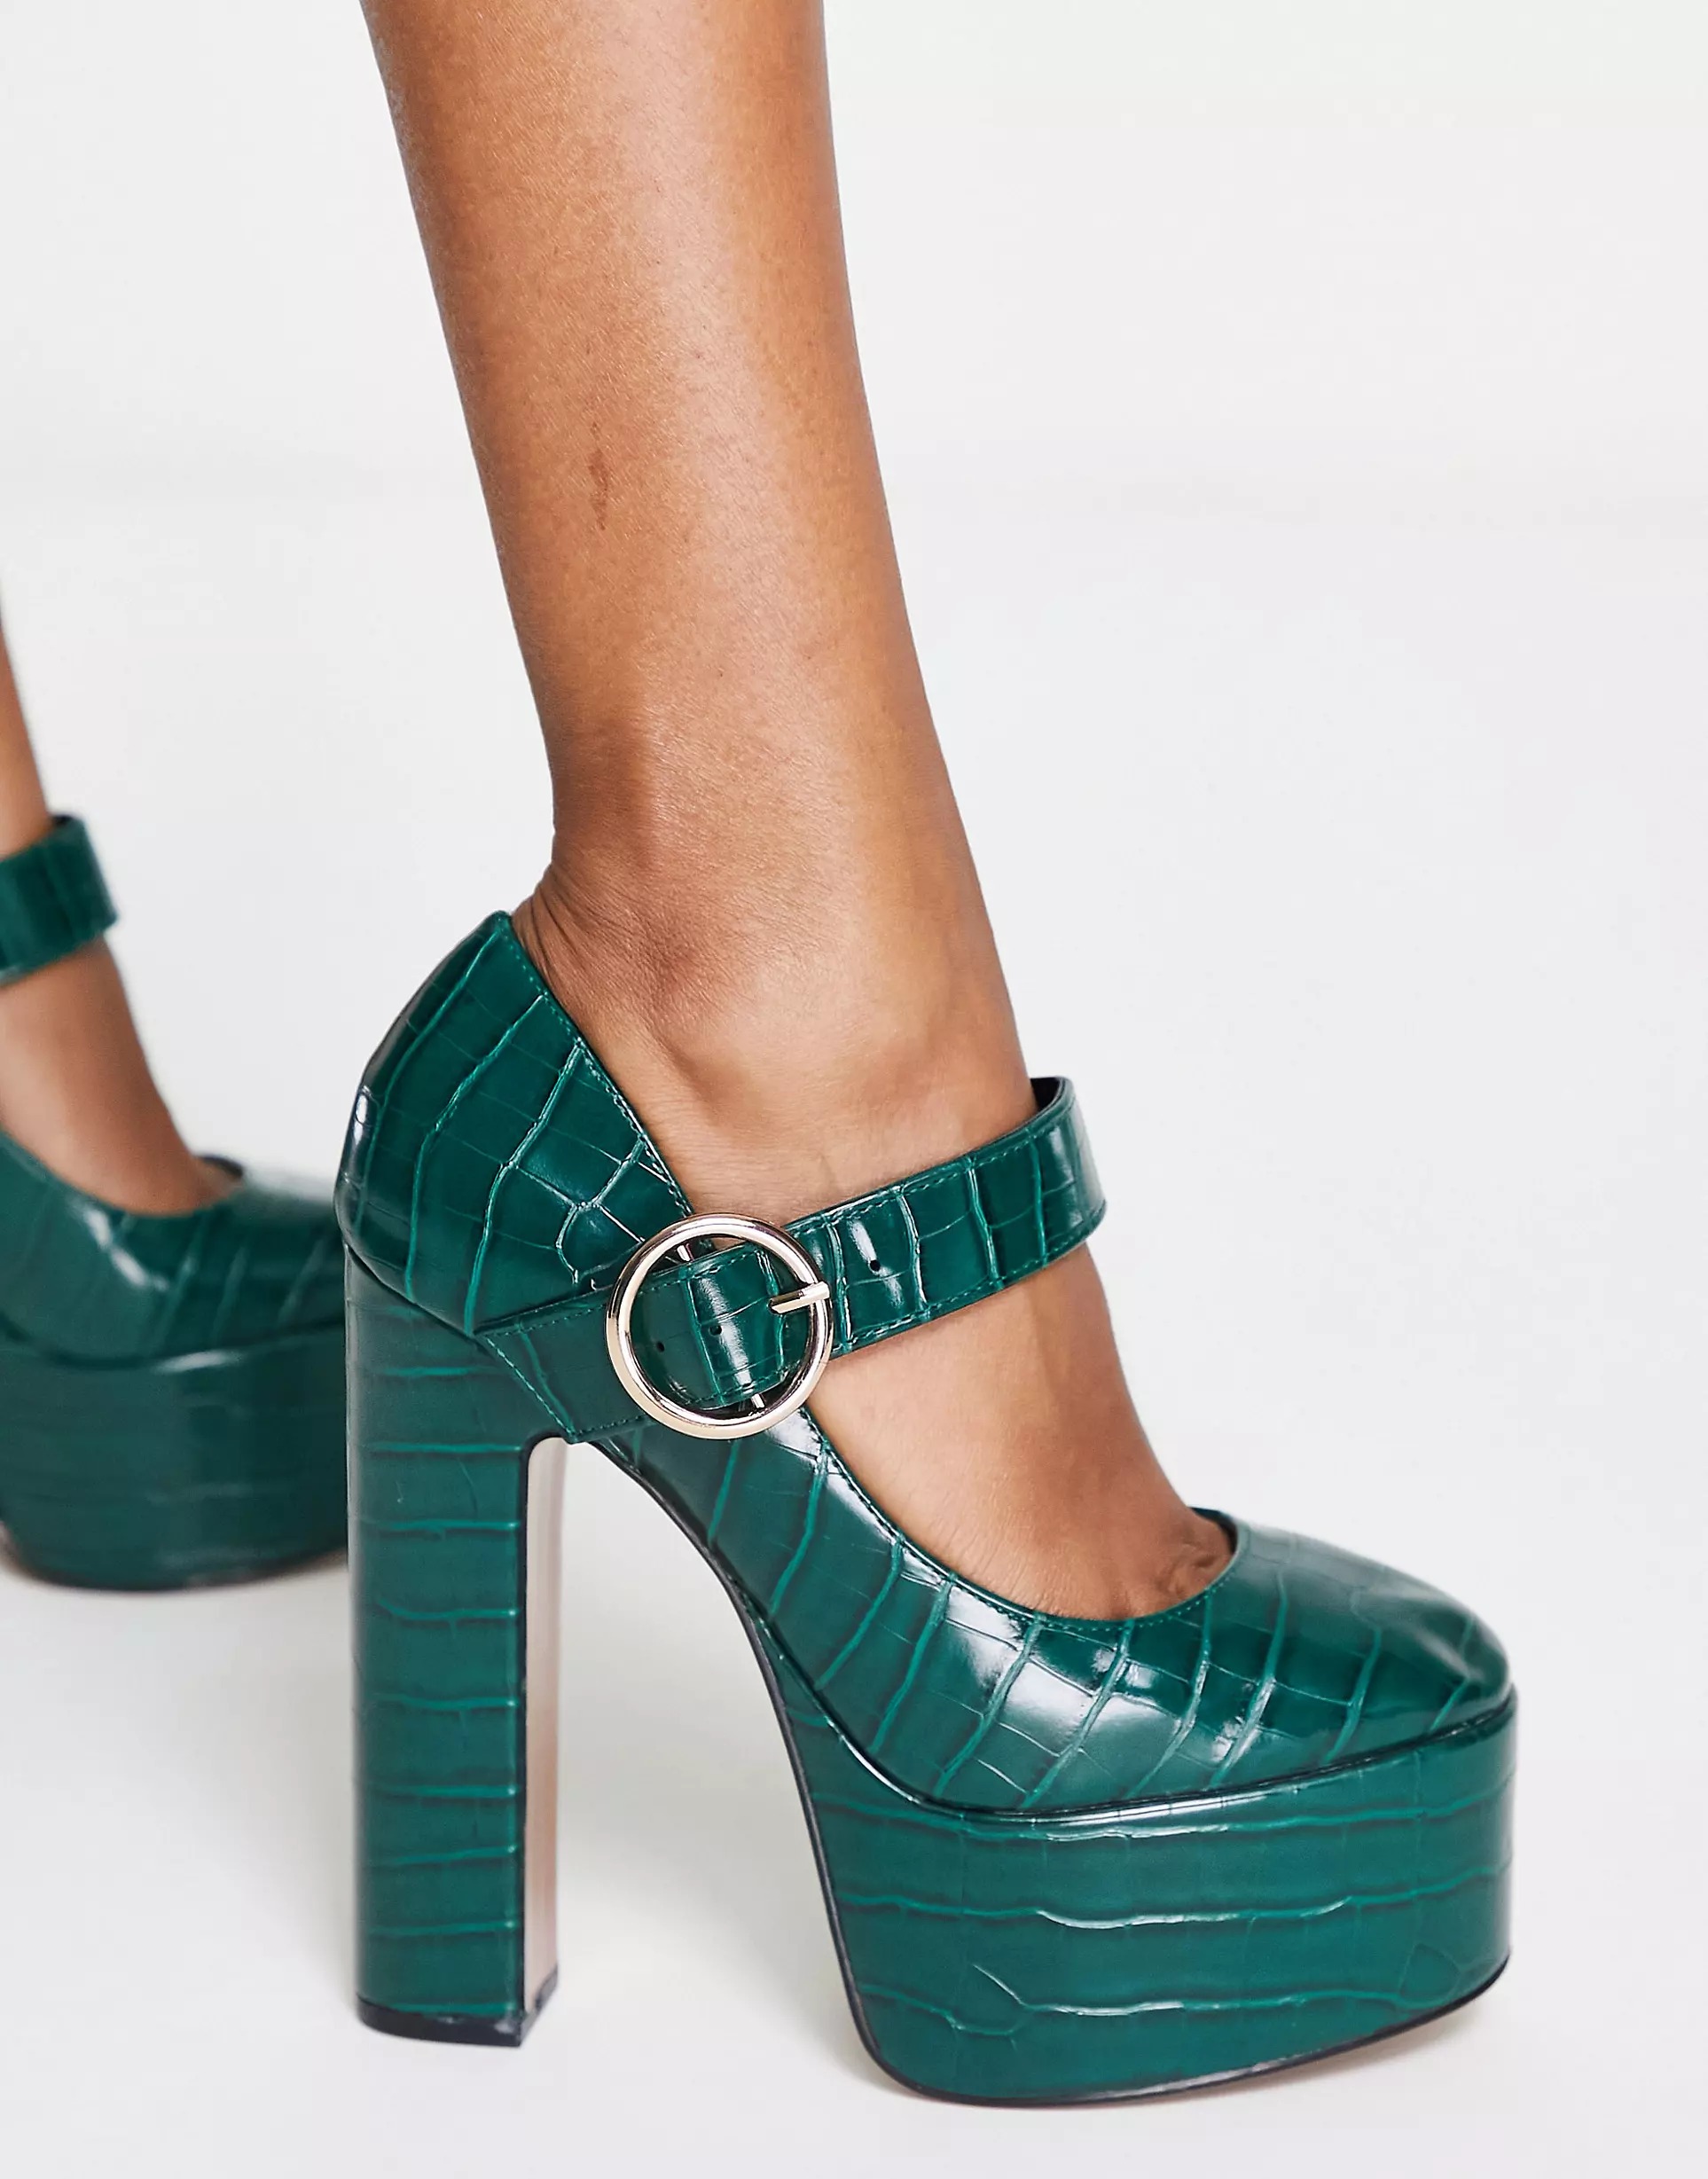 Туфли Asos Design Preppy Mary Jane Platform High, зеленый туфли в стиле лолита с бантом бабочкой фиолетовые туфли мэри джейн милые туфли на очень высоком каблуке дизайнерские туфли на платформе